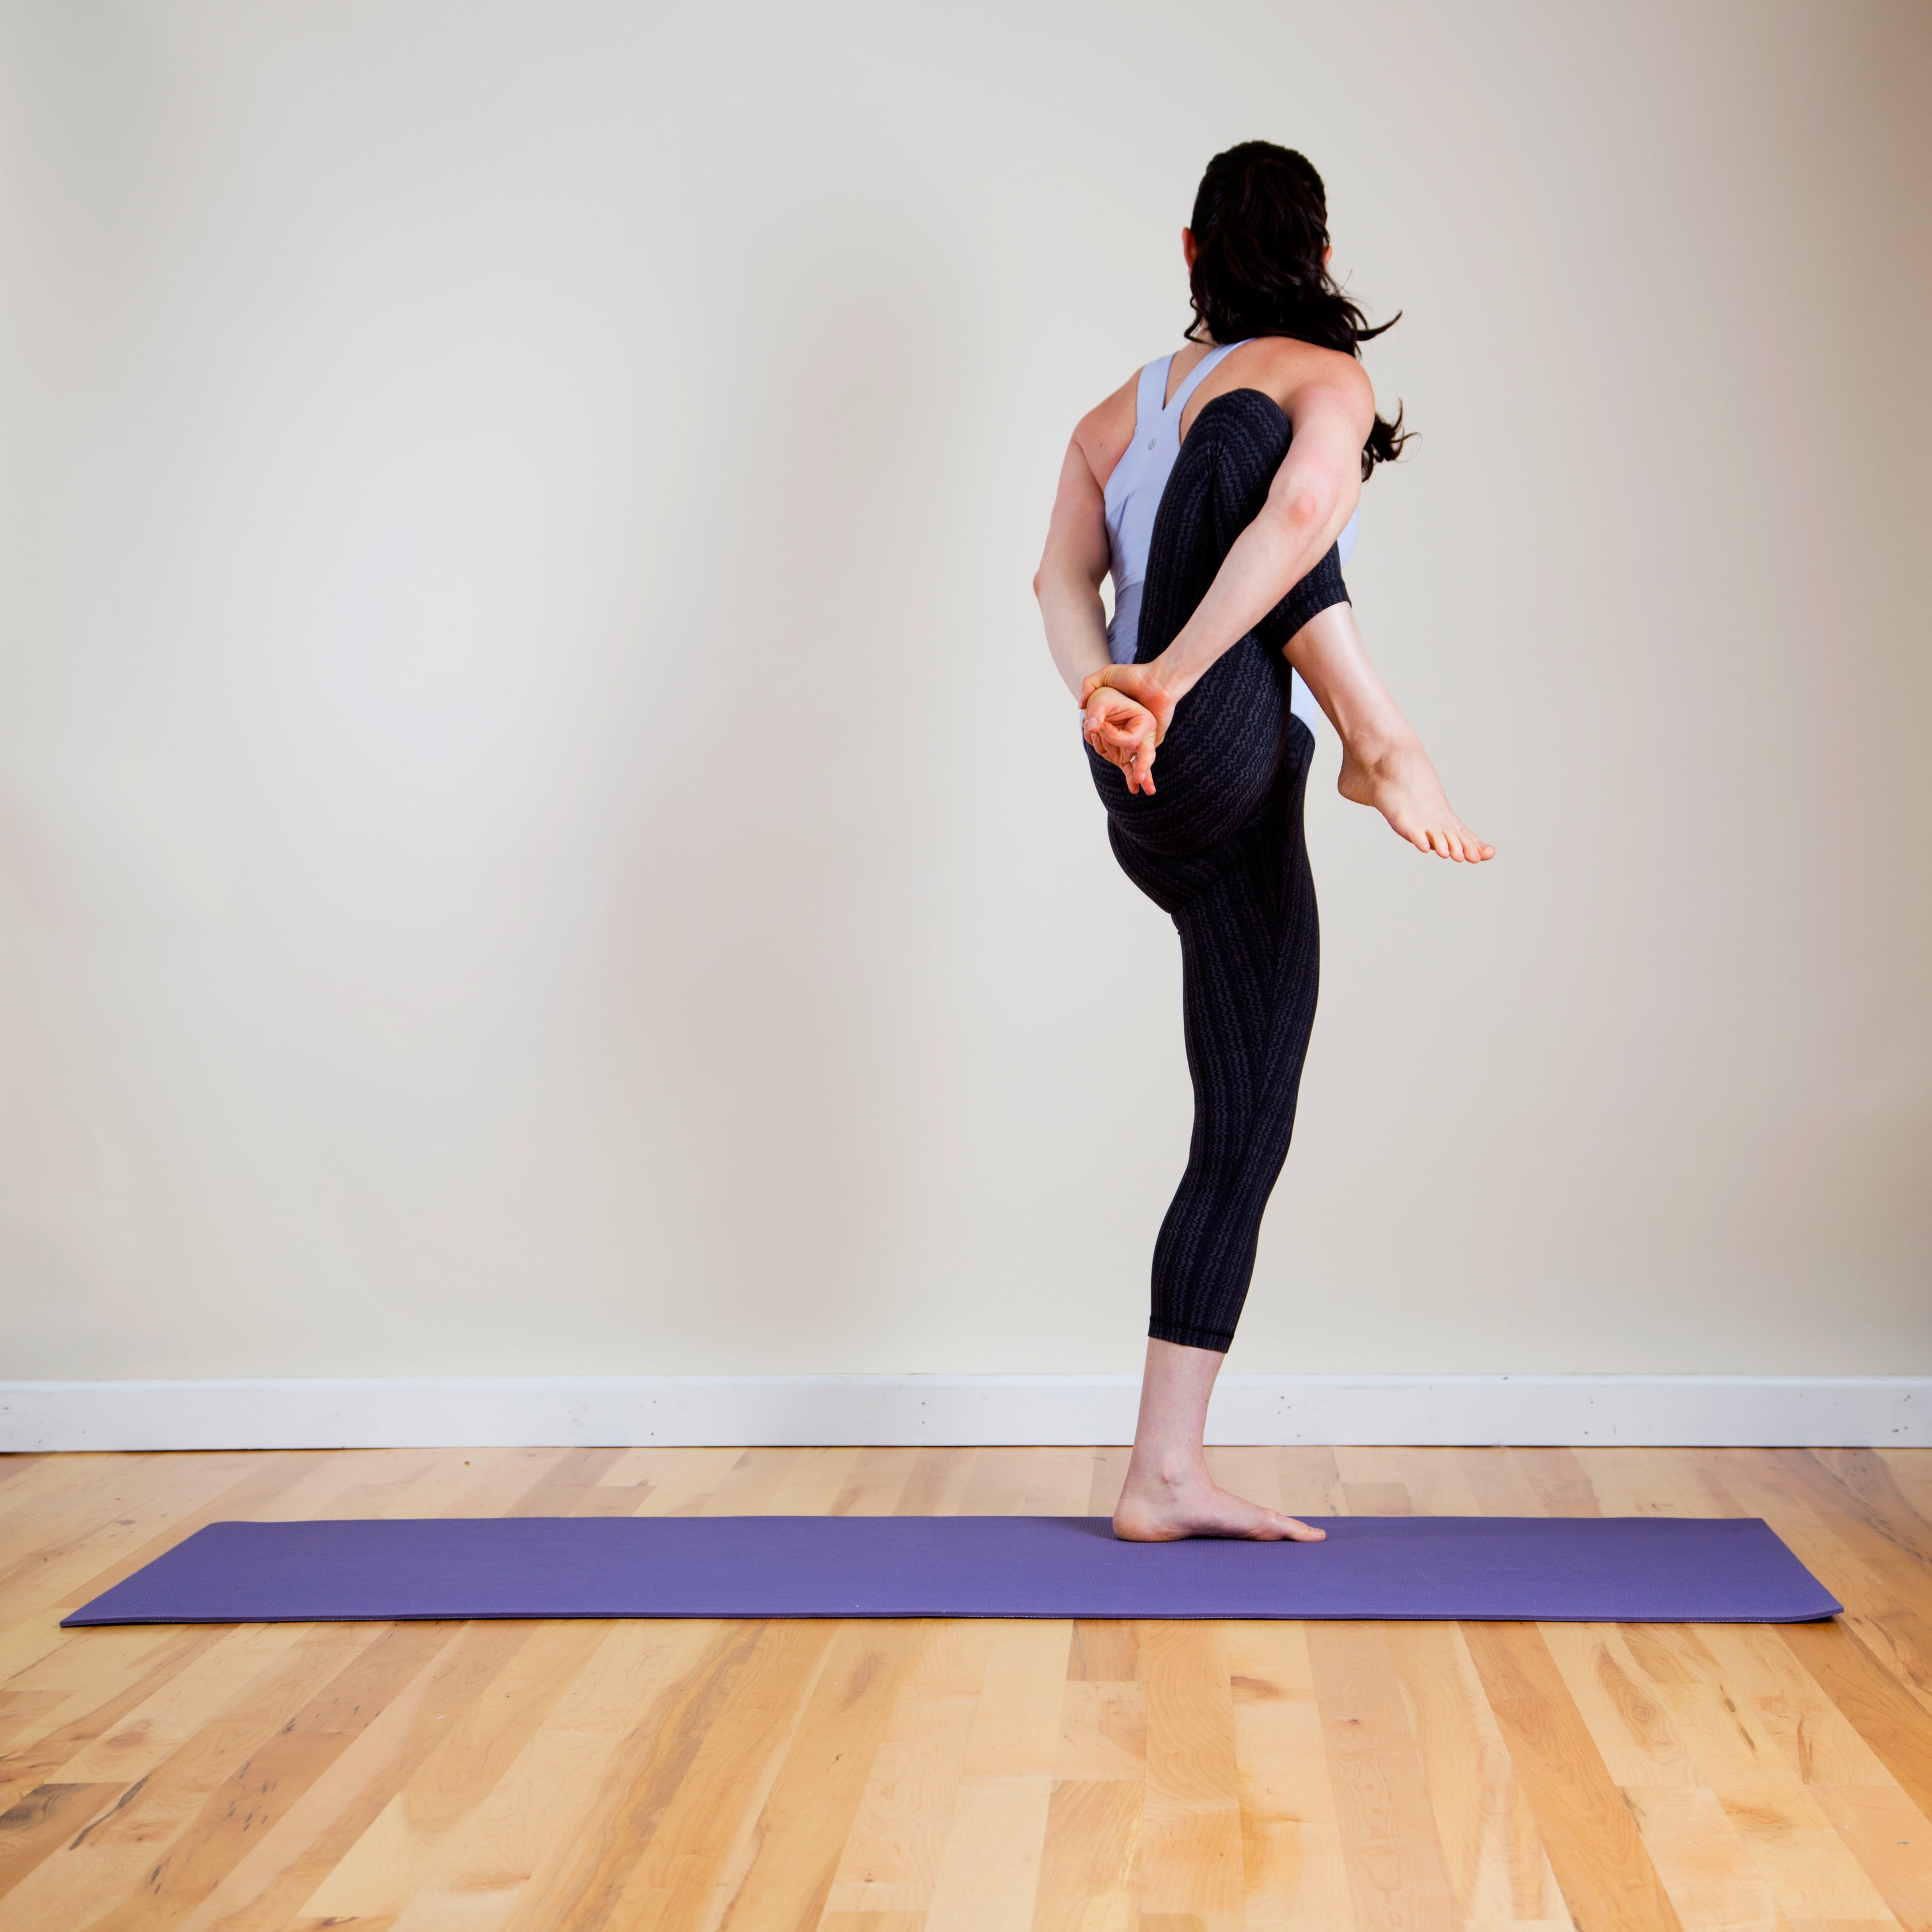 Wwwwwwwwwww Hd Sex Yoga - Yoga Sequence For Stronger Legs | POPSUGAR Fitness